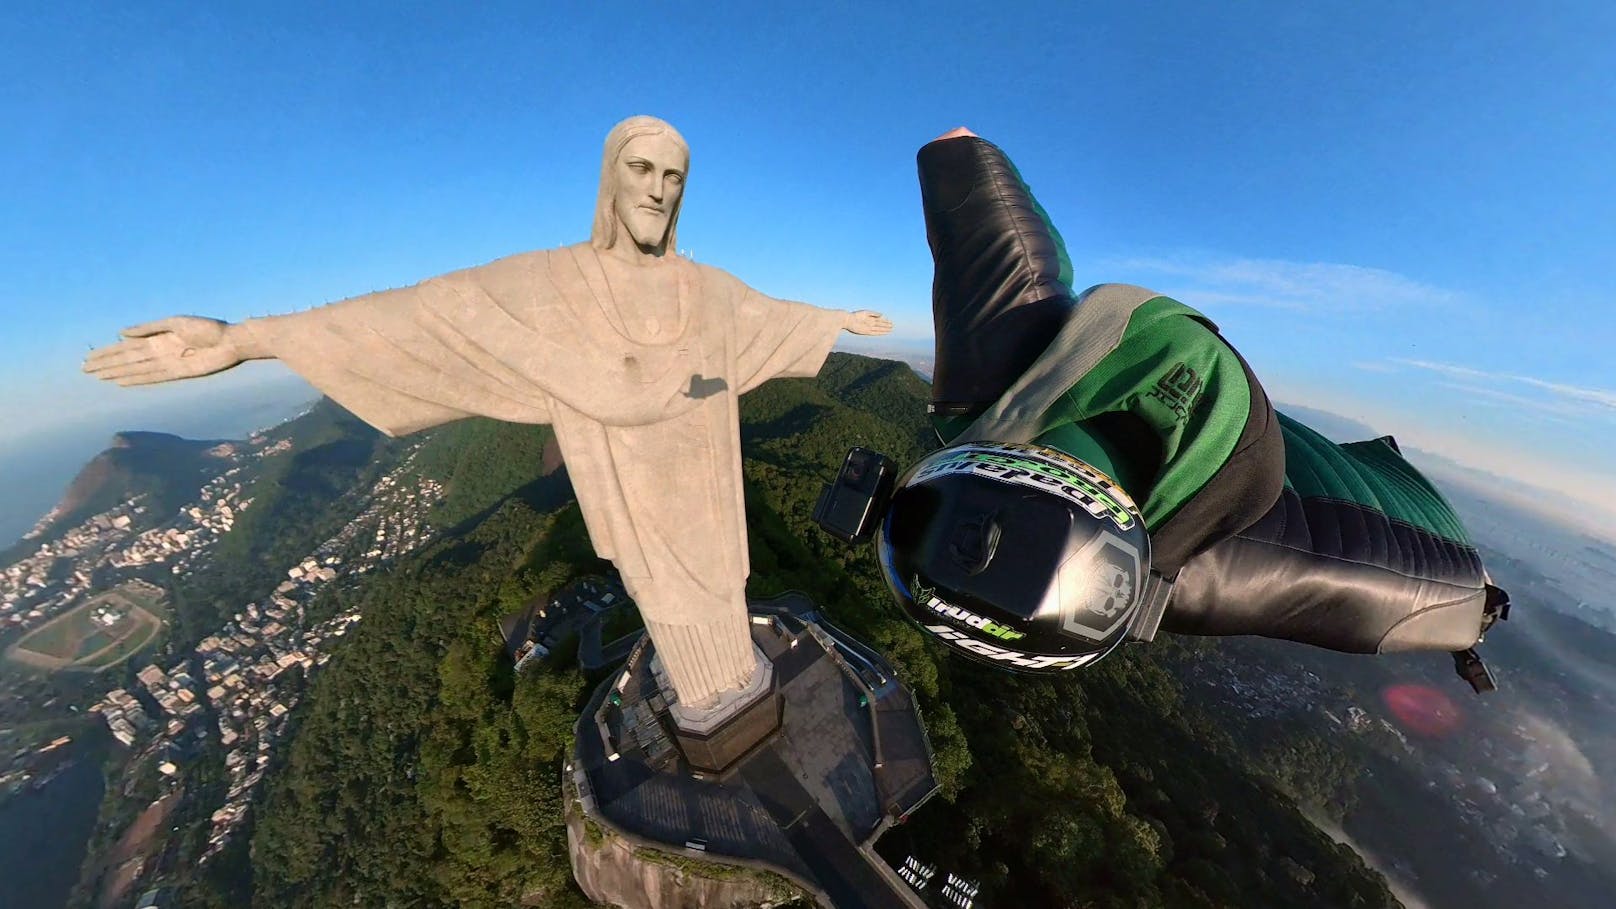 Der Steirer flog nur knapp an der weltbekannten Statue in Rio de Janeiro vorbei.